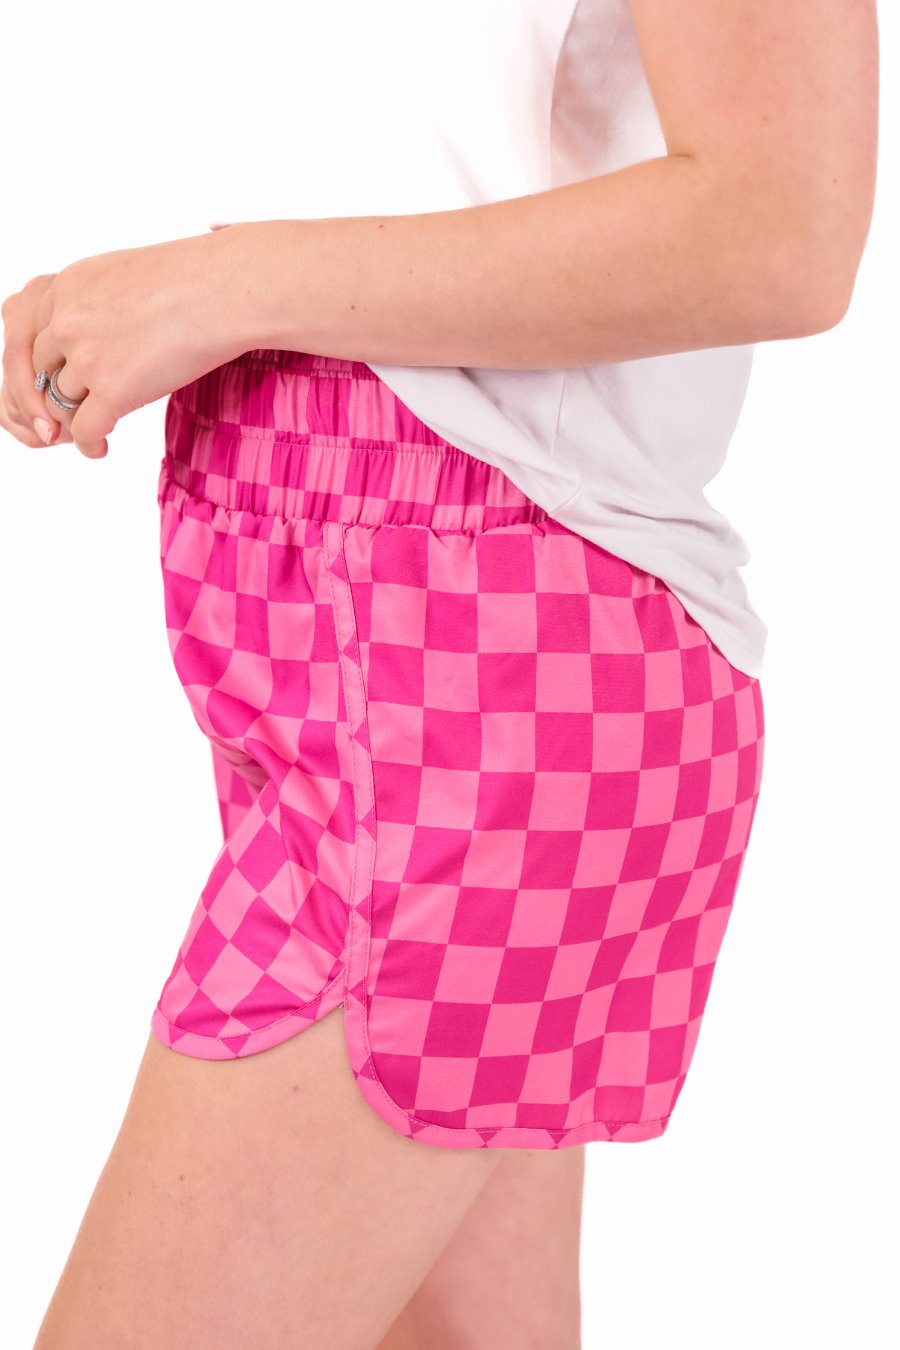 PREORDER-Vibe Check Checkered Shorts